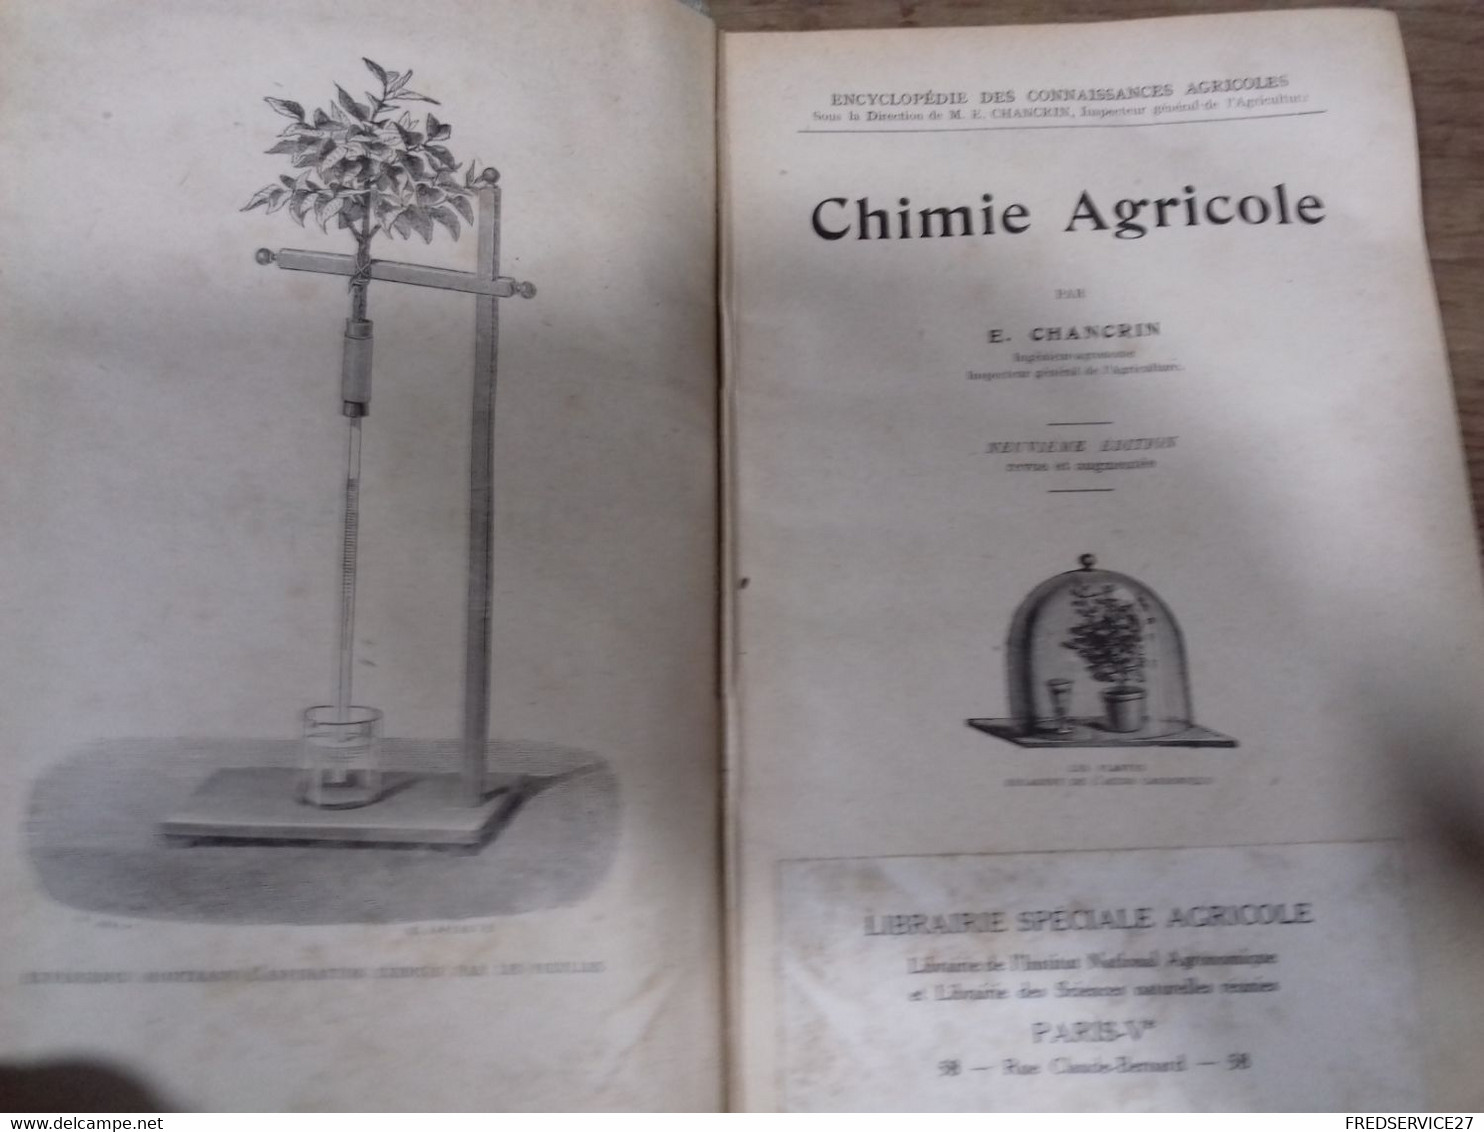 43  //   ENCYCLOPEDIE DES CONNAISSANCES AGRICOLES    CHIMIE AGRICOLE   HACHETTE - Encyclopédies